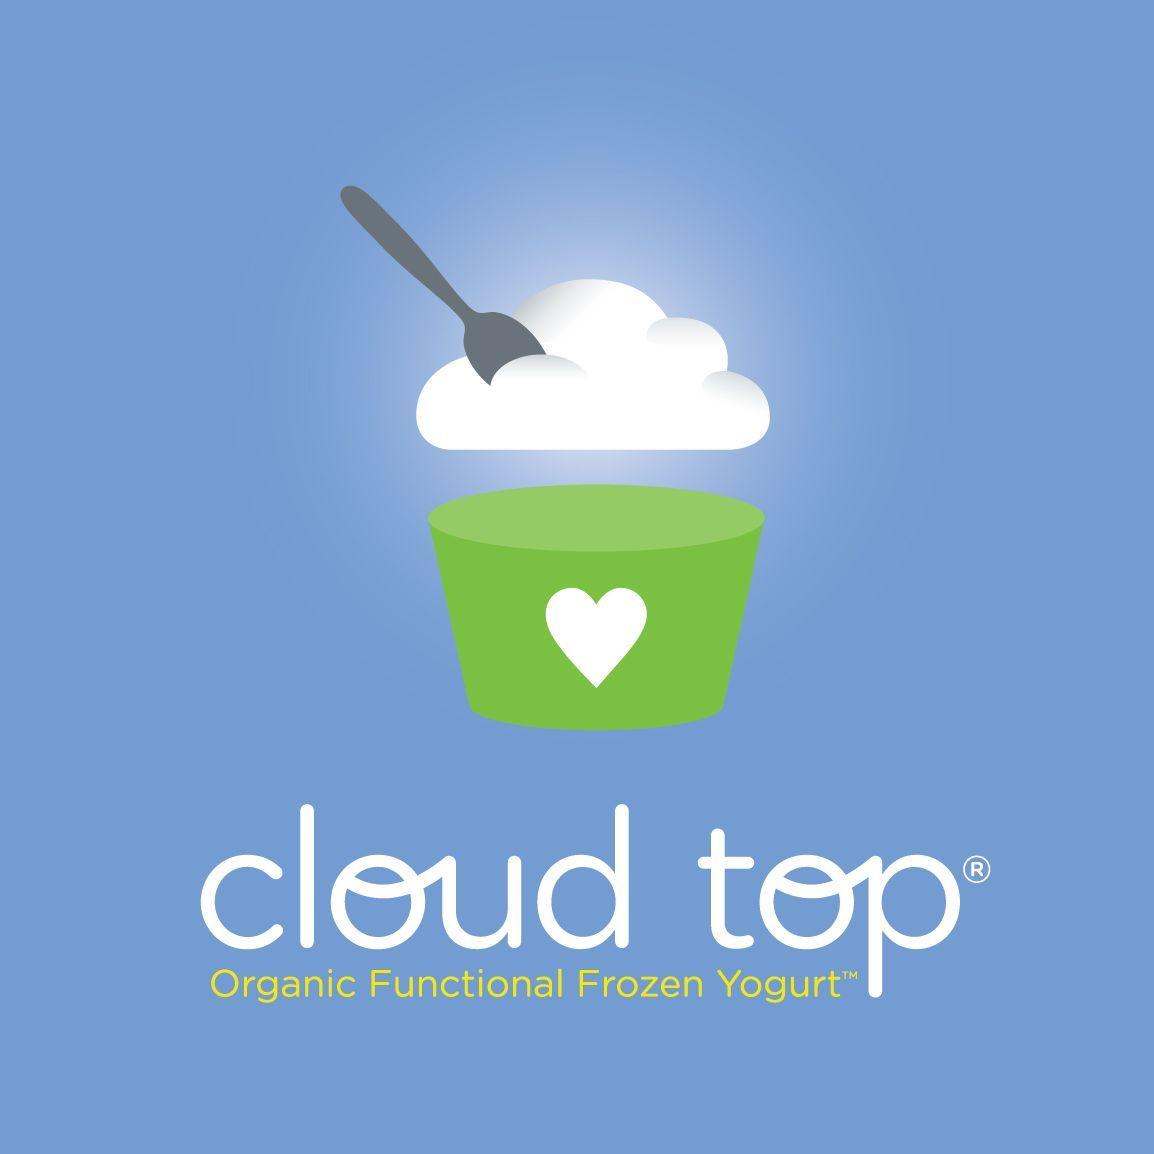 Yogurt Company Logo - Frozen Yogurt Logos Cloud top company logo